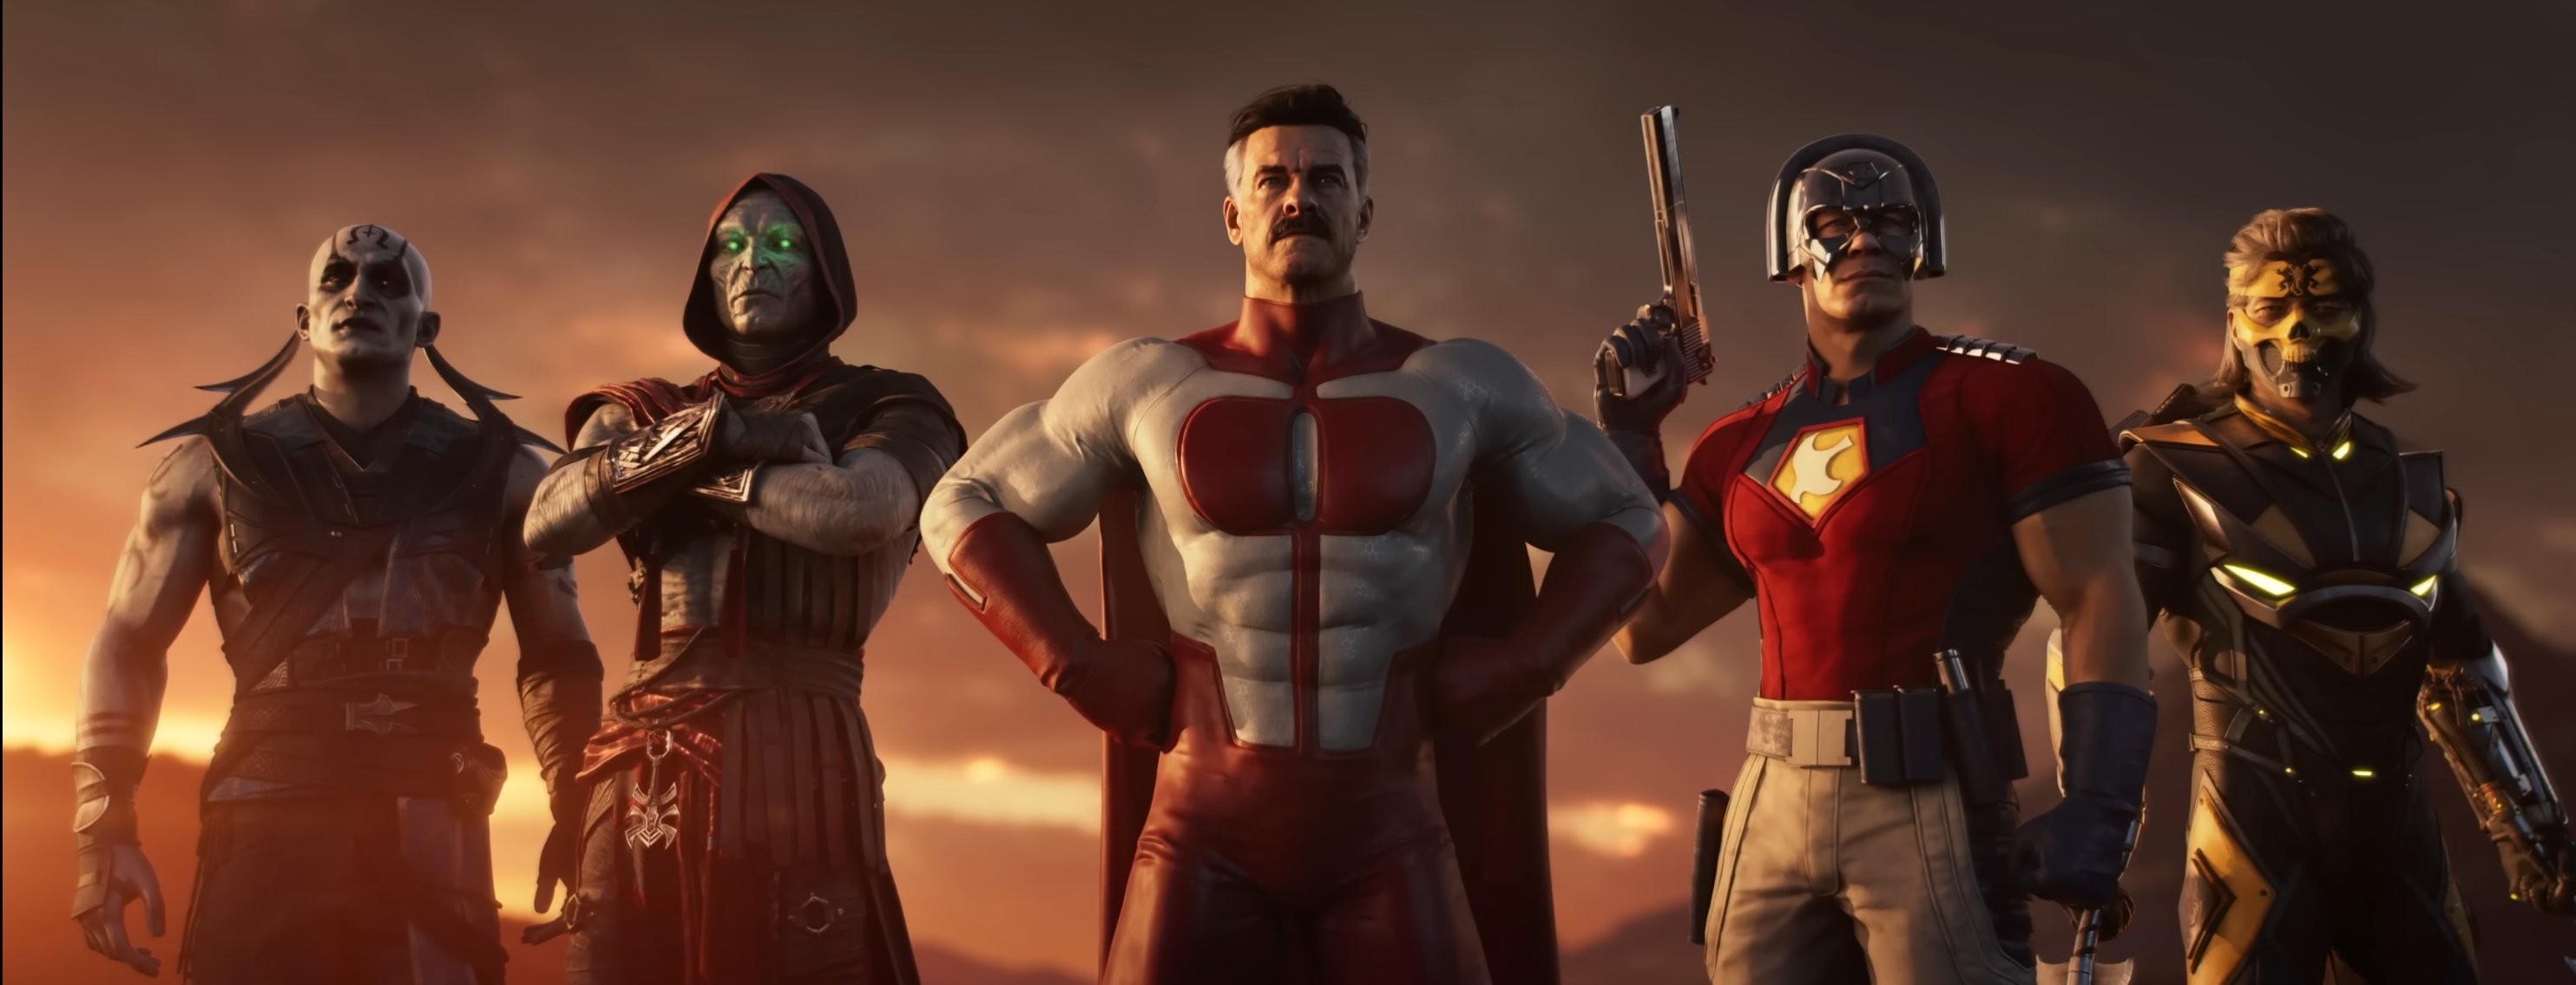 Mortal Kombat 1 Homelander release date, trailer, and DLC details